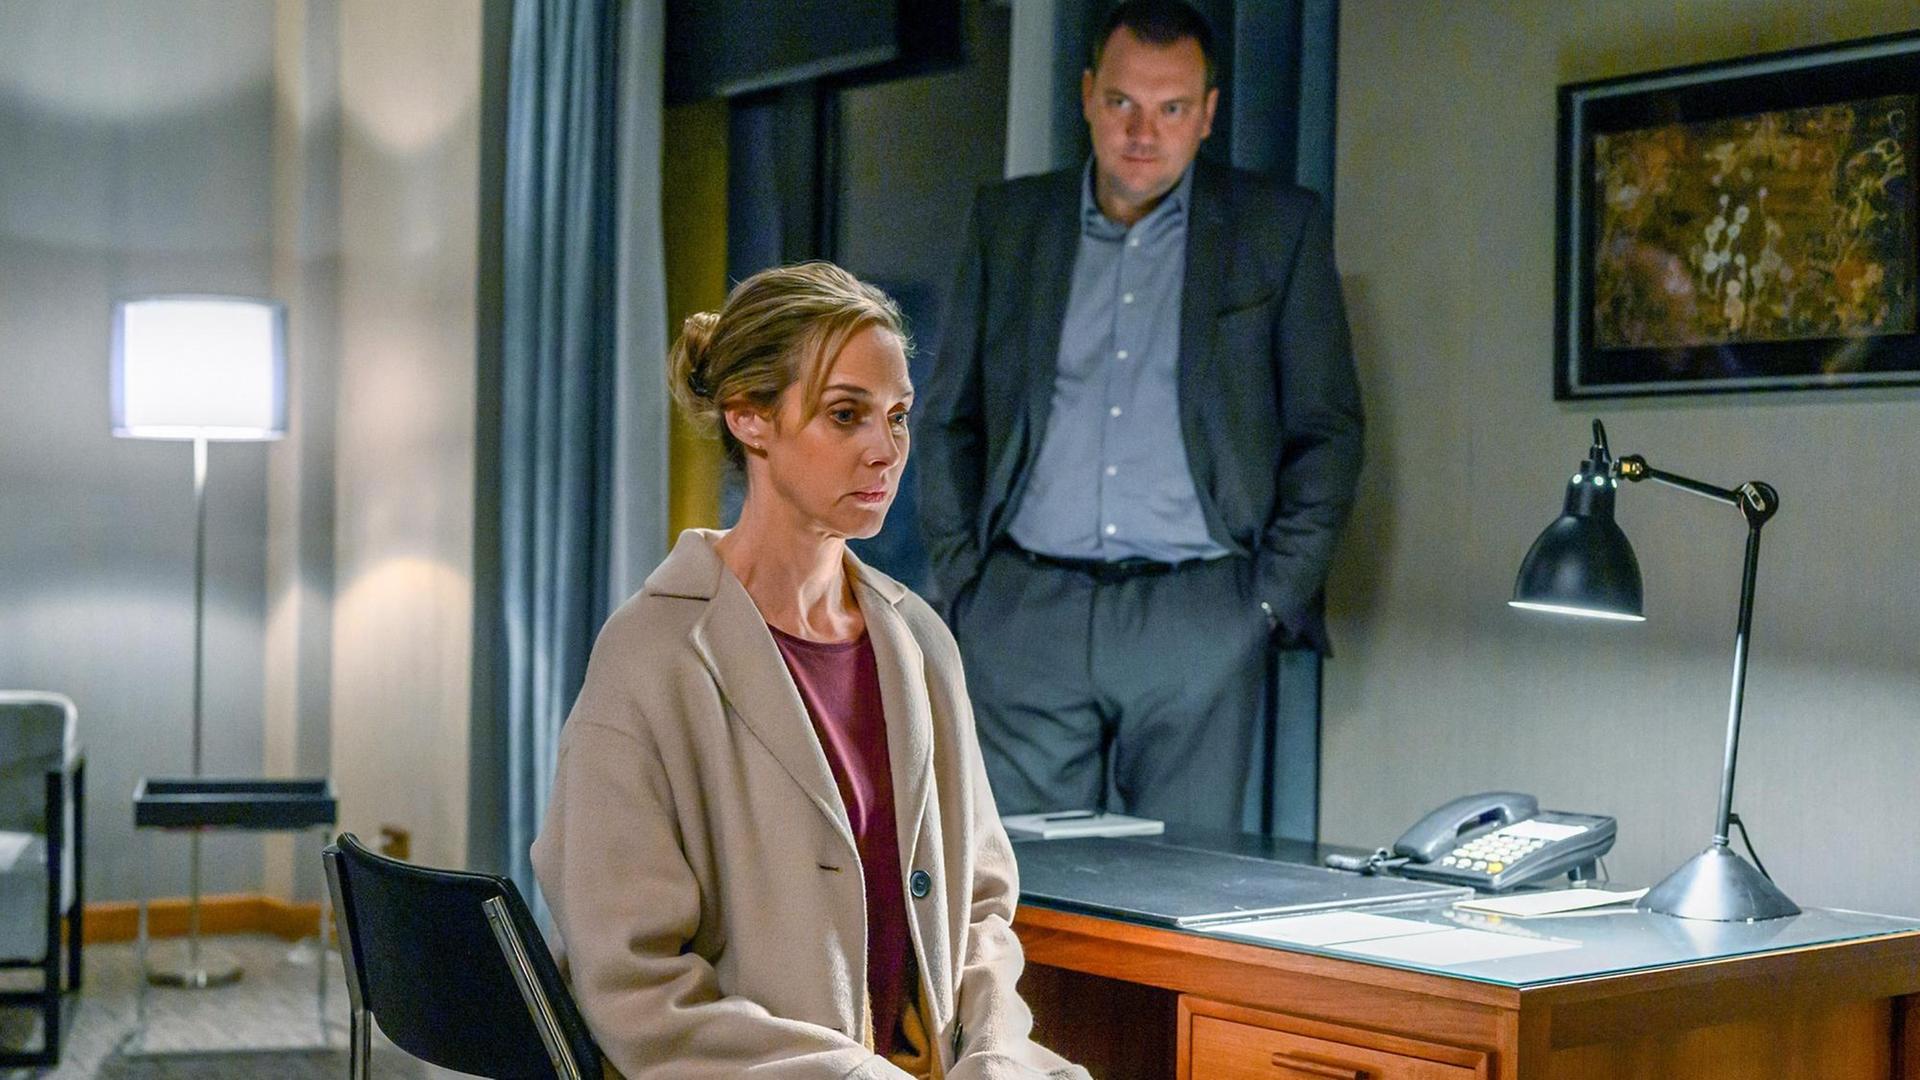 Szene aus dem Fernsehfilm "Das Verhör in der Nacht". Thomas (Charly Hübner) wartet auf eine Antwort von Judith (Sophie von Kessel), die auf einem Schreibtischstuhl sitzend in Gedanken versunken ist.